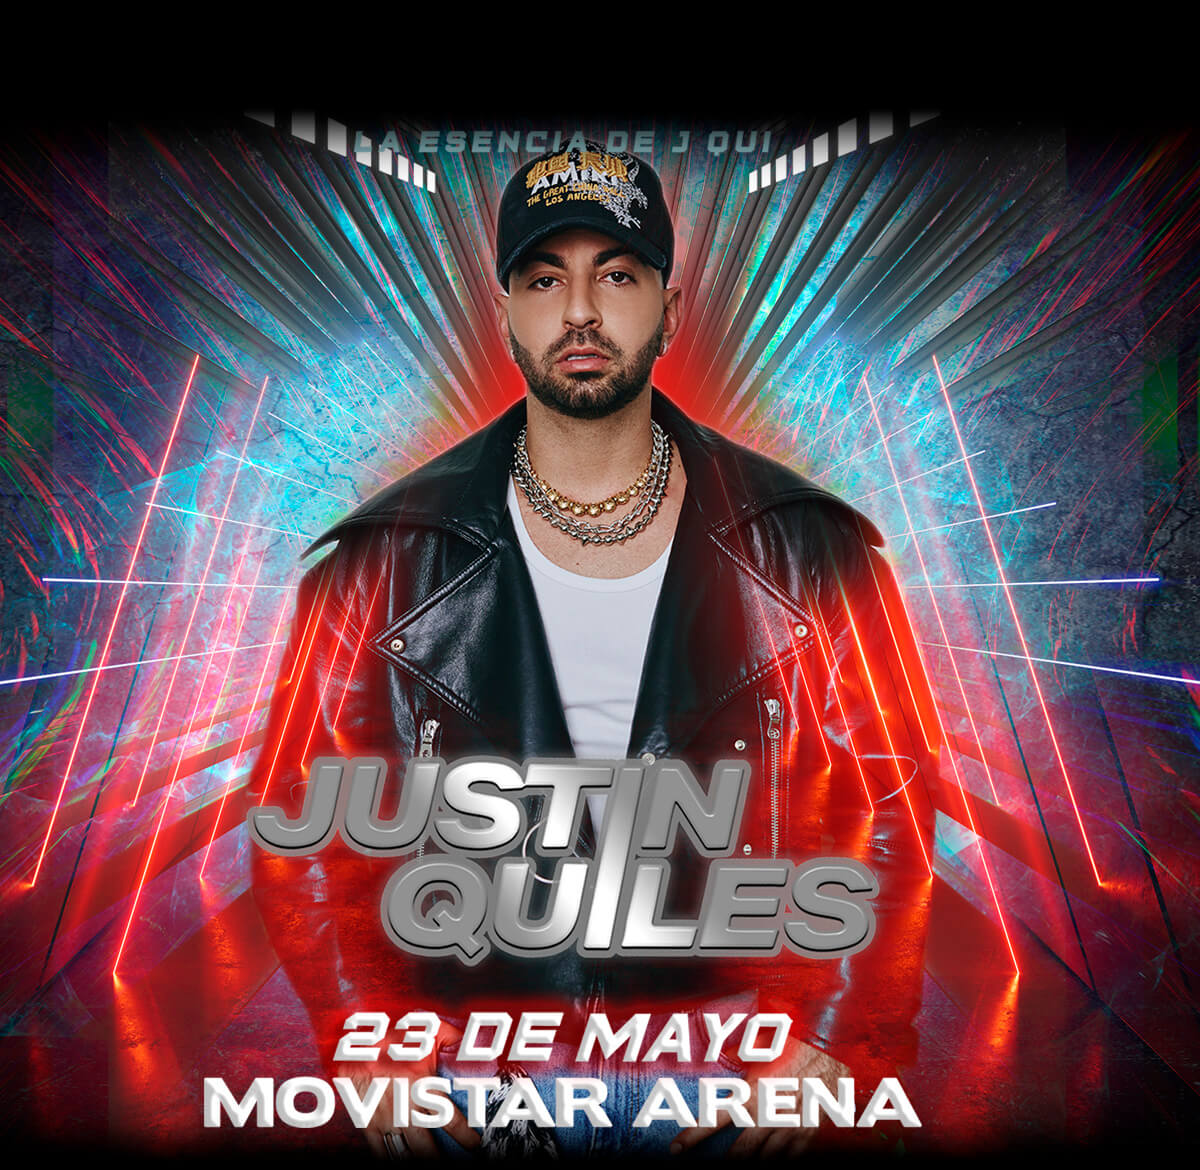 J Quiles en Chile